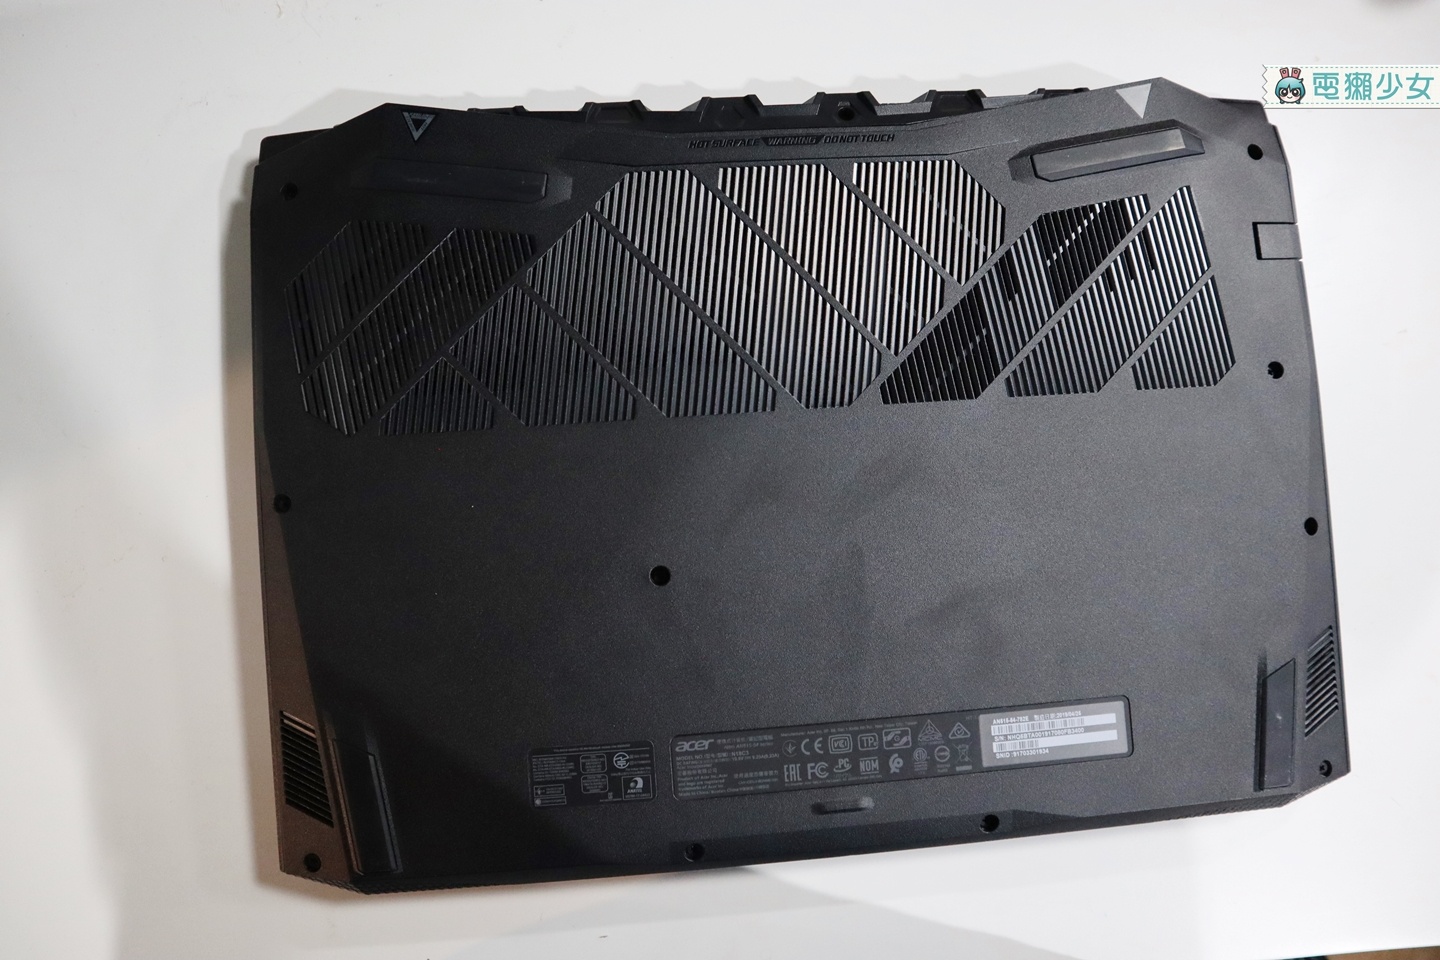 開箱｜五萬內的電競筆電 Acer Nitro 5，採用今年最新第9代Intel Core i7-9750H處理器、NVIDIA GeForce GTX 1660Ti獨顯